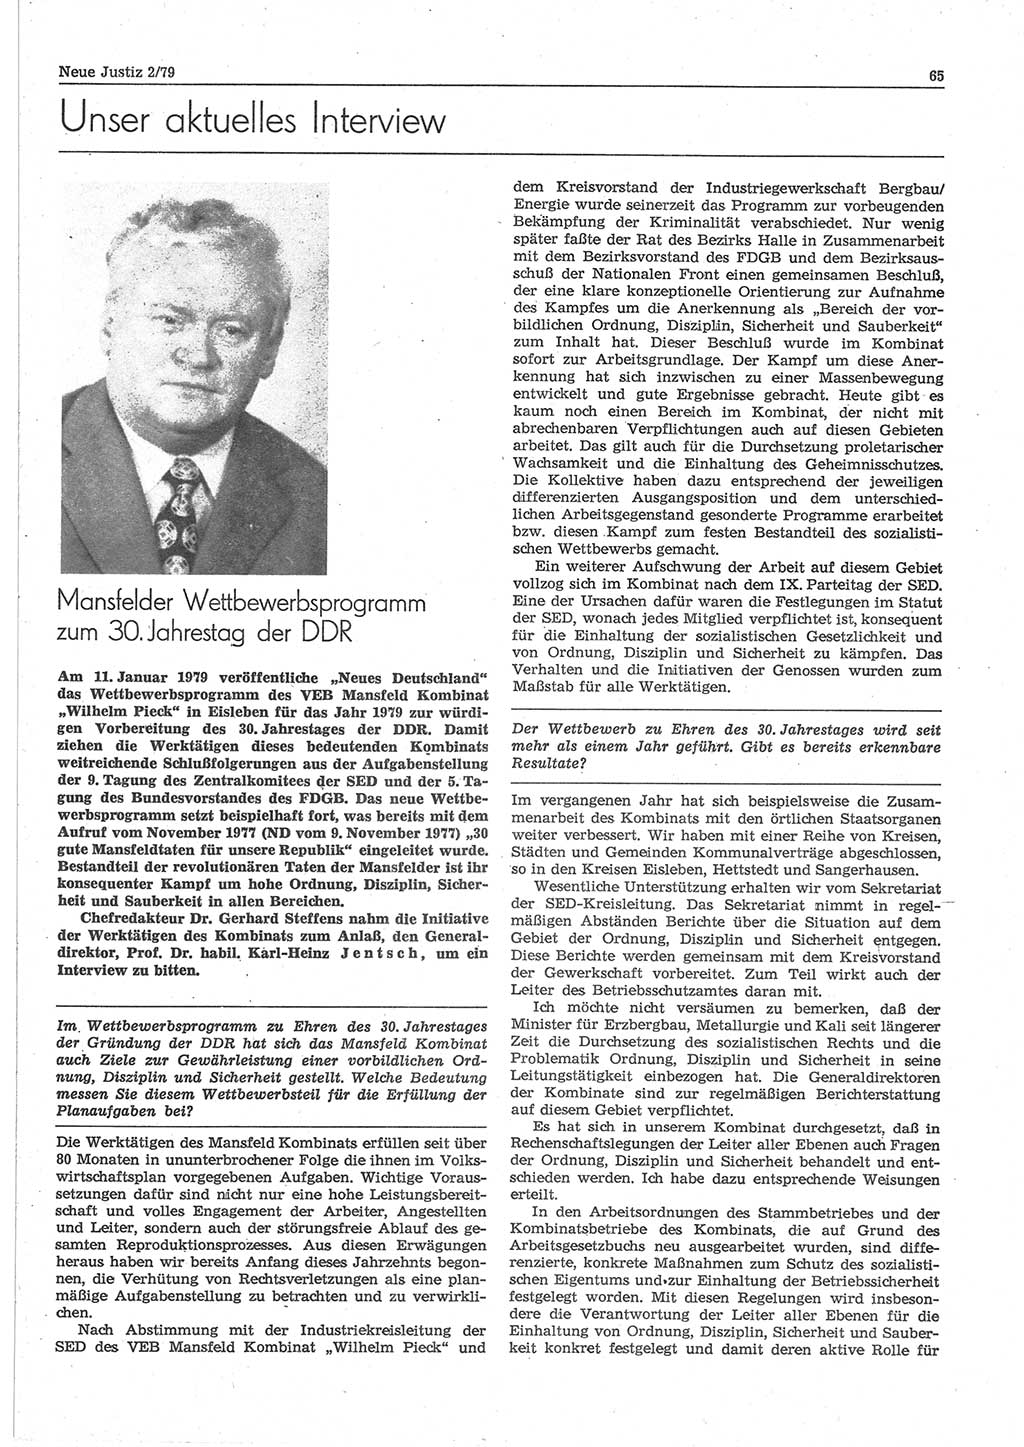 Neue Justiz (NJ), Zeitschrift für sozialistisches Recht und Gesetzlichkeit [Deutsche Demokratische Republik (DDR)], 33. Jahrgang 1979, Seite 65 (NJ DDR 1979, S. 65)